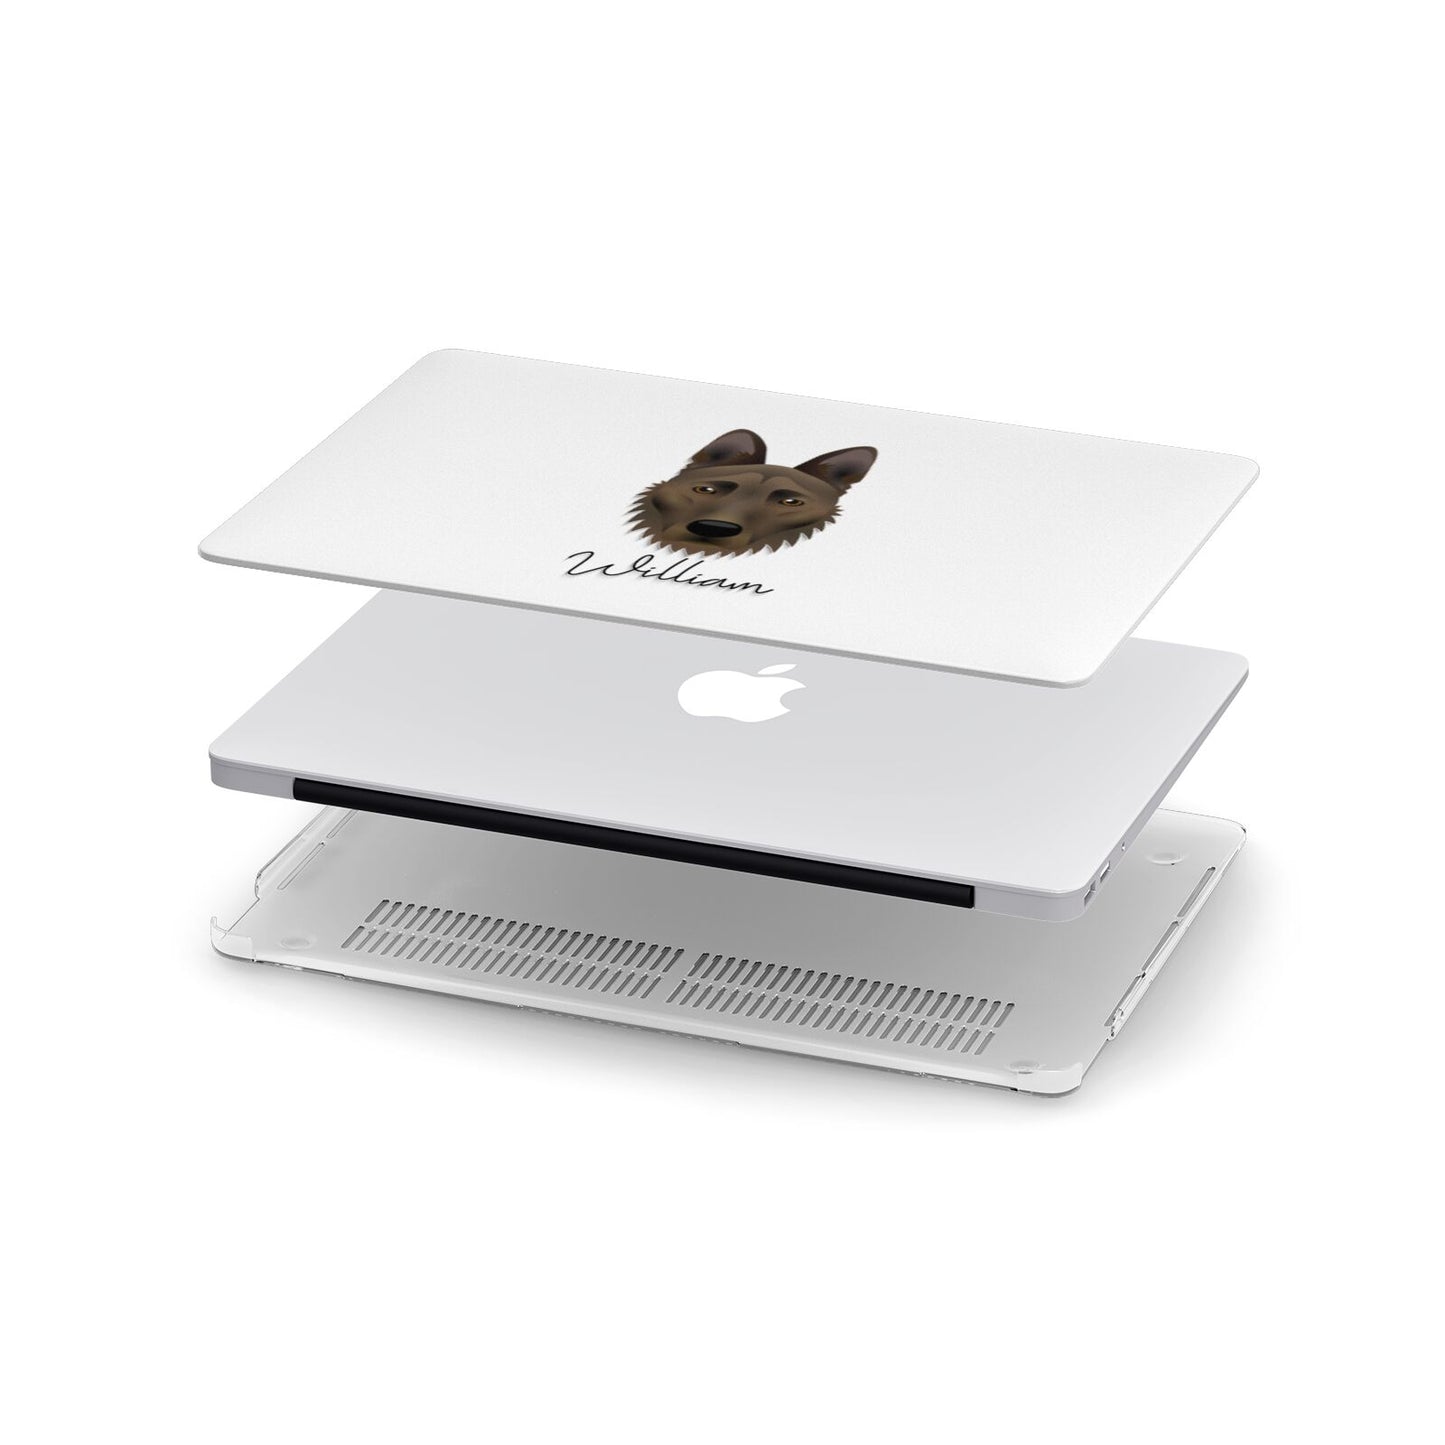 Dutch Shepherd Personalised Apple MacBook Case in Detail